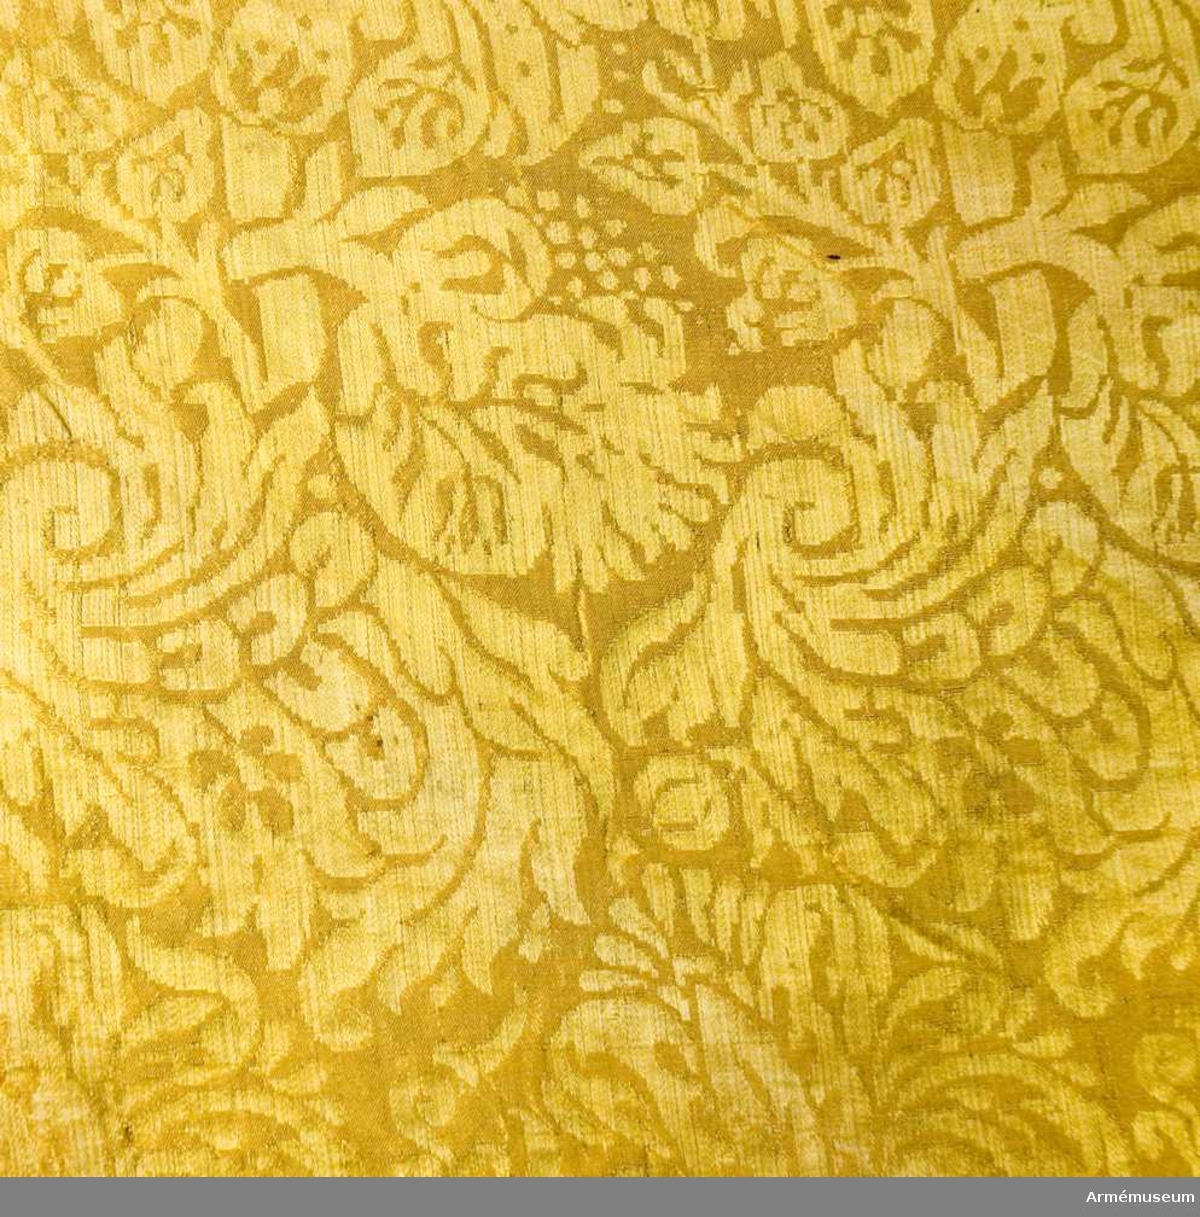 Duk:
Tillverkad av gul sidendamast, sydd av två horisontella våder. Kantad med enkel gul silkesfrans. Fäst vid stången med två rader tennlickor på gula band.

Dekor:
Saknas.

Banderoll:
Flätad gul snodd.

Tofs:
Tillverkad i gult och vitt silke.

Stång:
Tillverkad av gulgrönmålad furu. Kannelerad ovanför greppet, nedanför slät. Löpande bärring. Spets och holk i ett stycke av järn. Spetsen består av ett spegelmonogram, ett C utan krona.